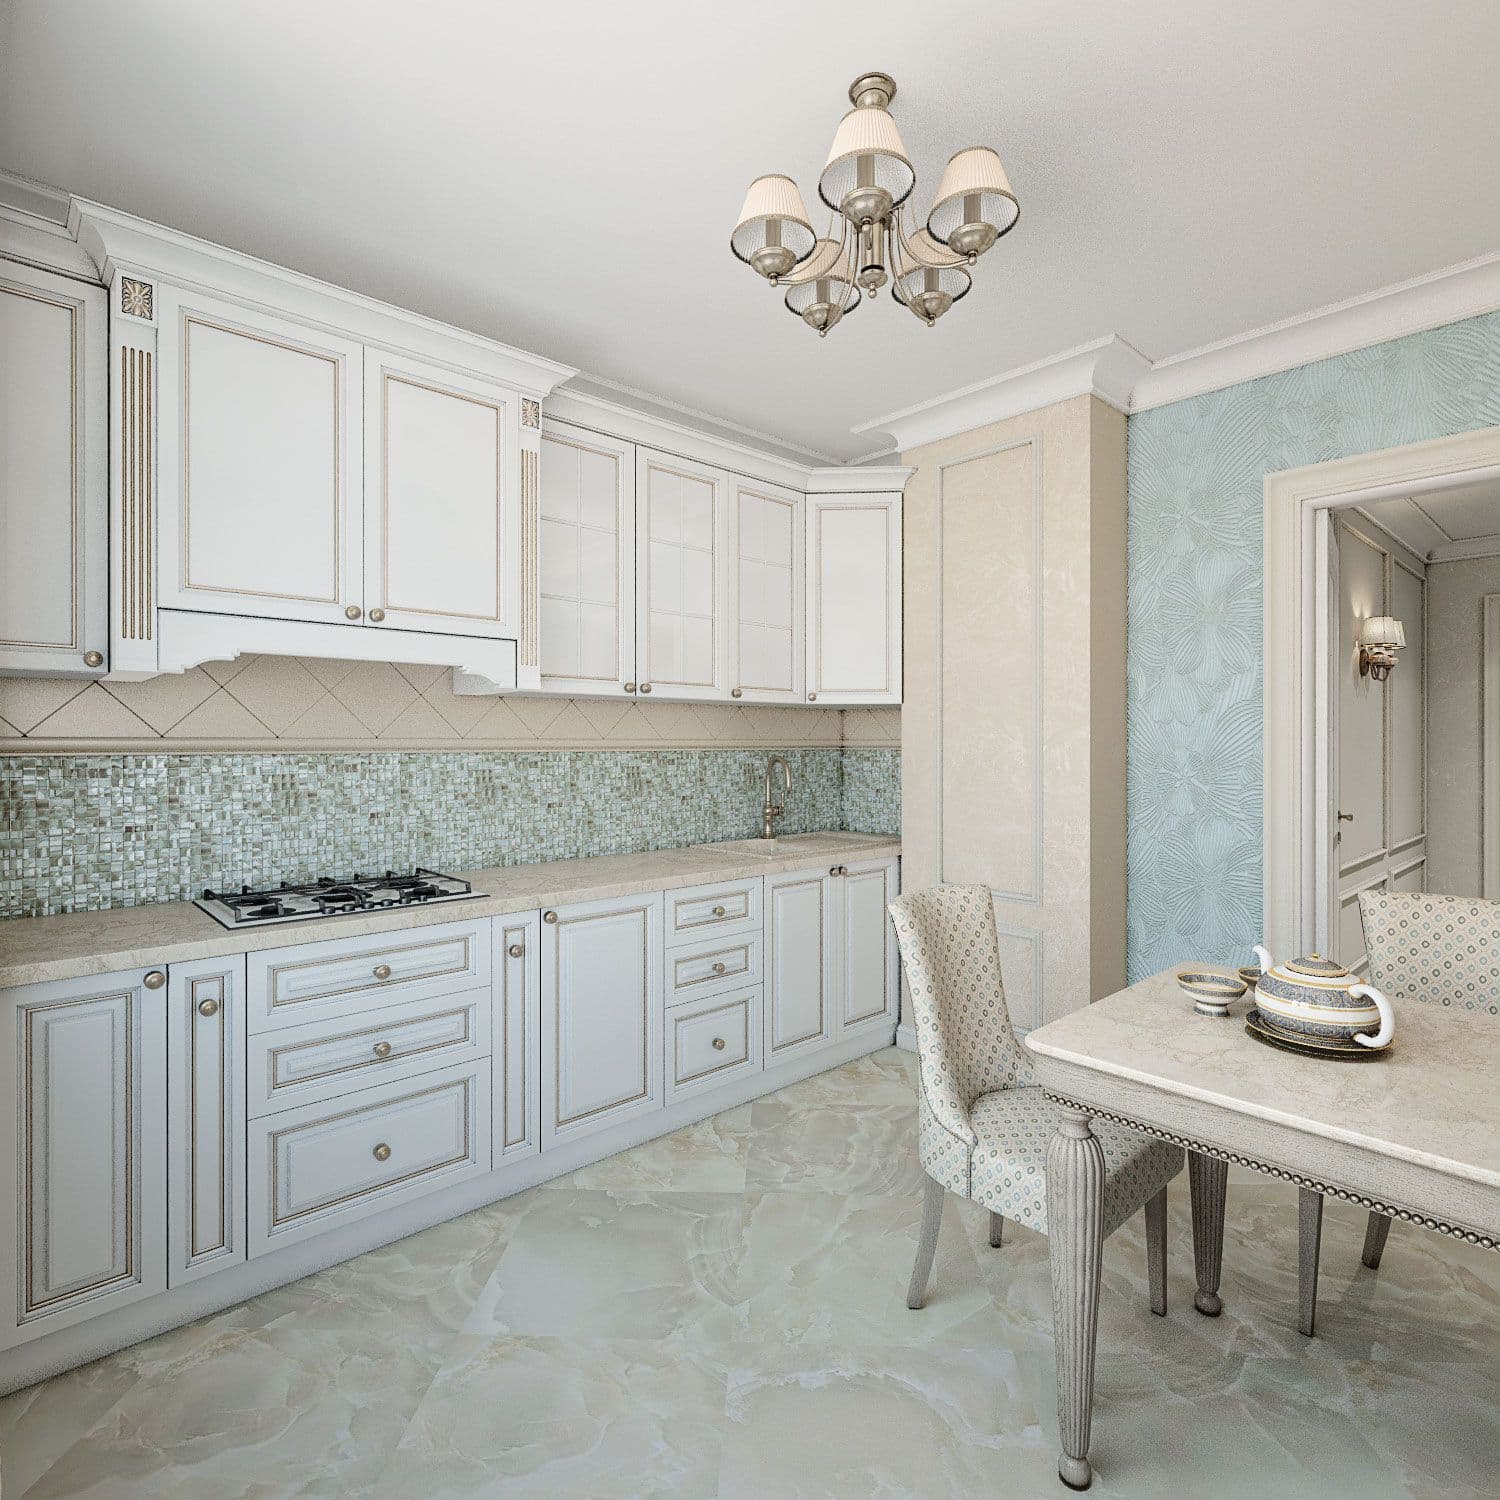 Дизайн кухни в белом цвете с голубыми стенами, фартуком из мозаики, рабочим подоконником, французскими шторами, обеденным столом, вид 3